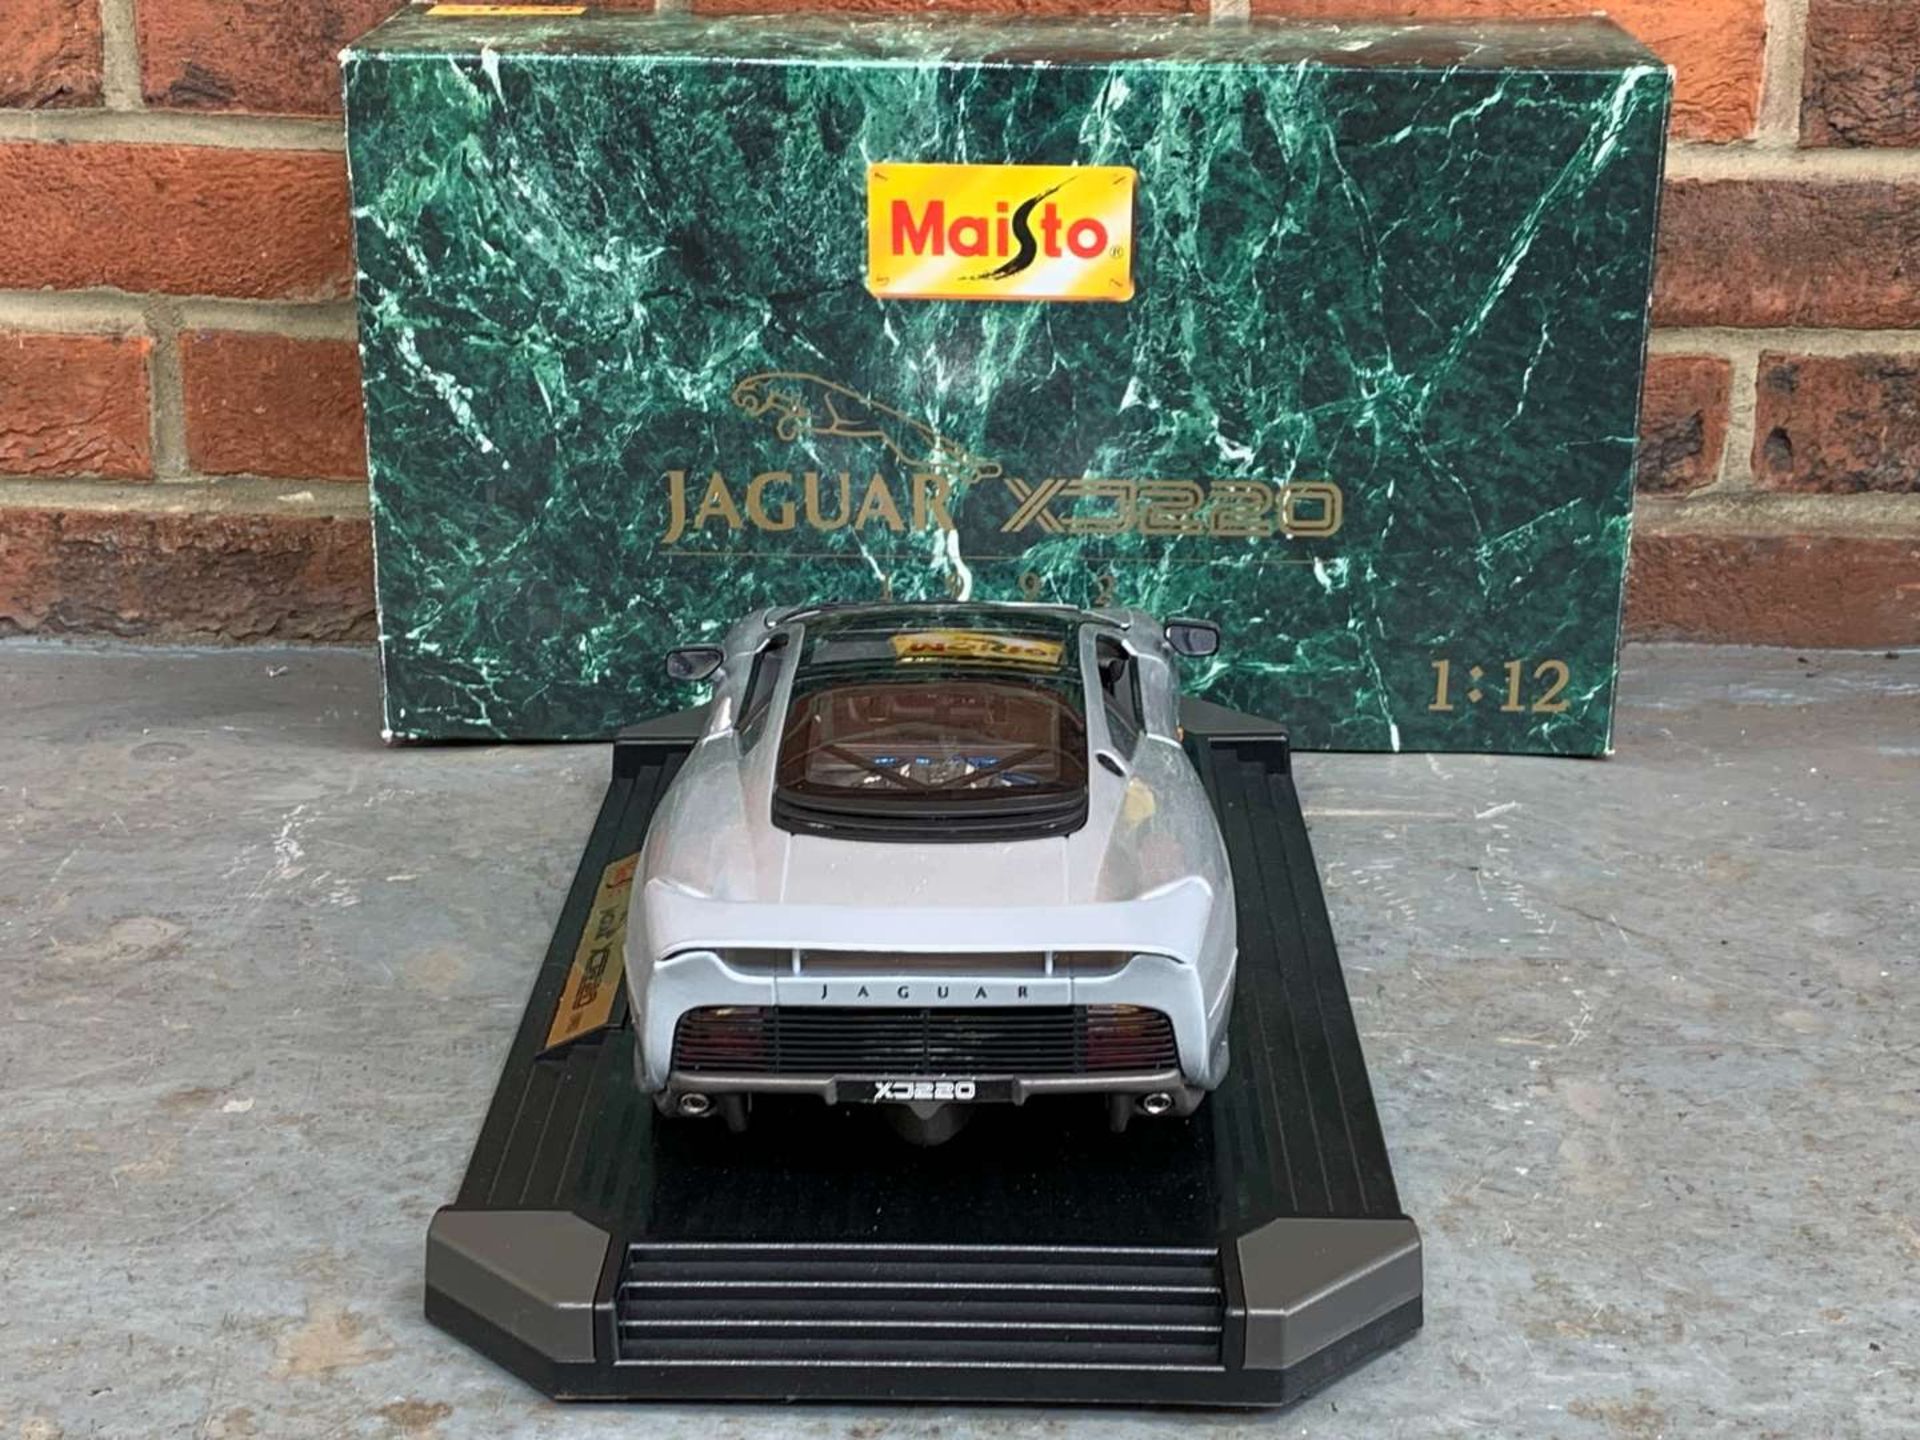 Maisto Jaguar XJ220 1;12 Scale Boxed Die Cast Car - Image 4 of 6